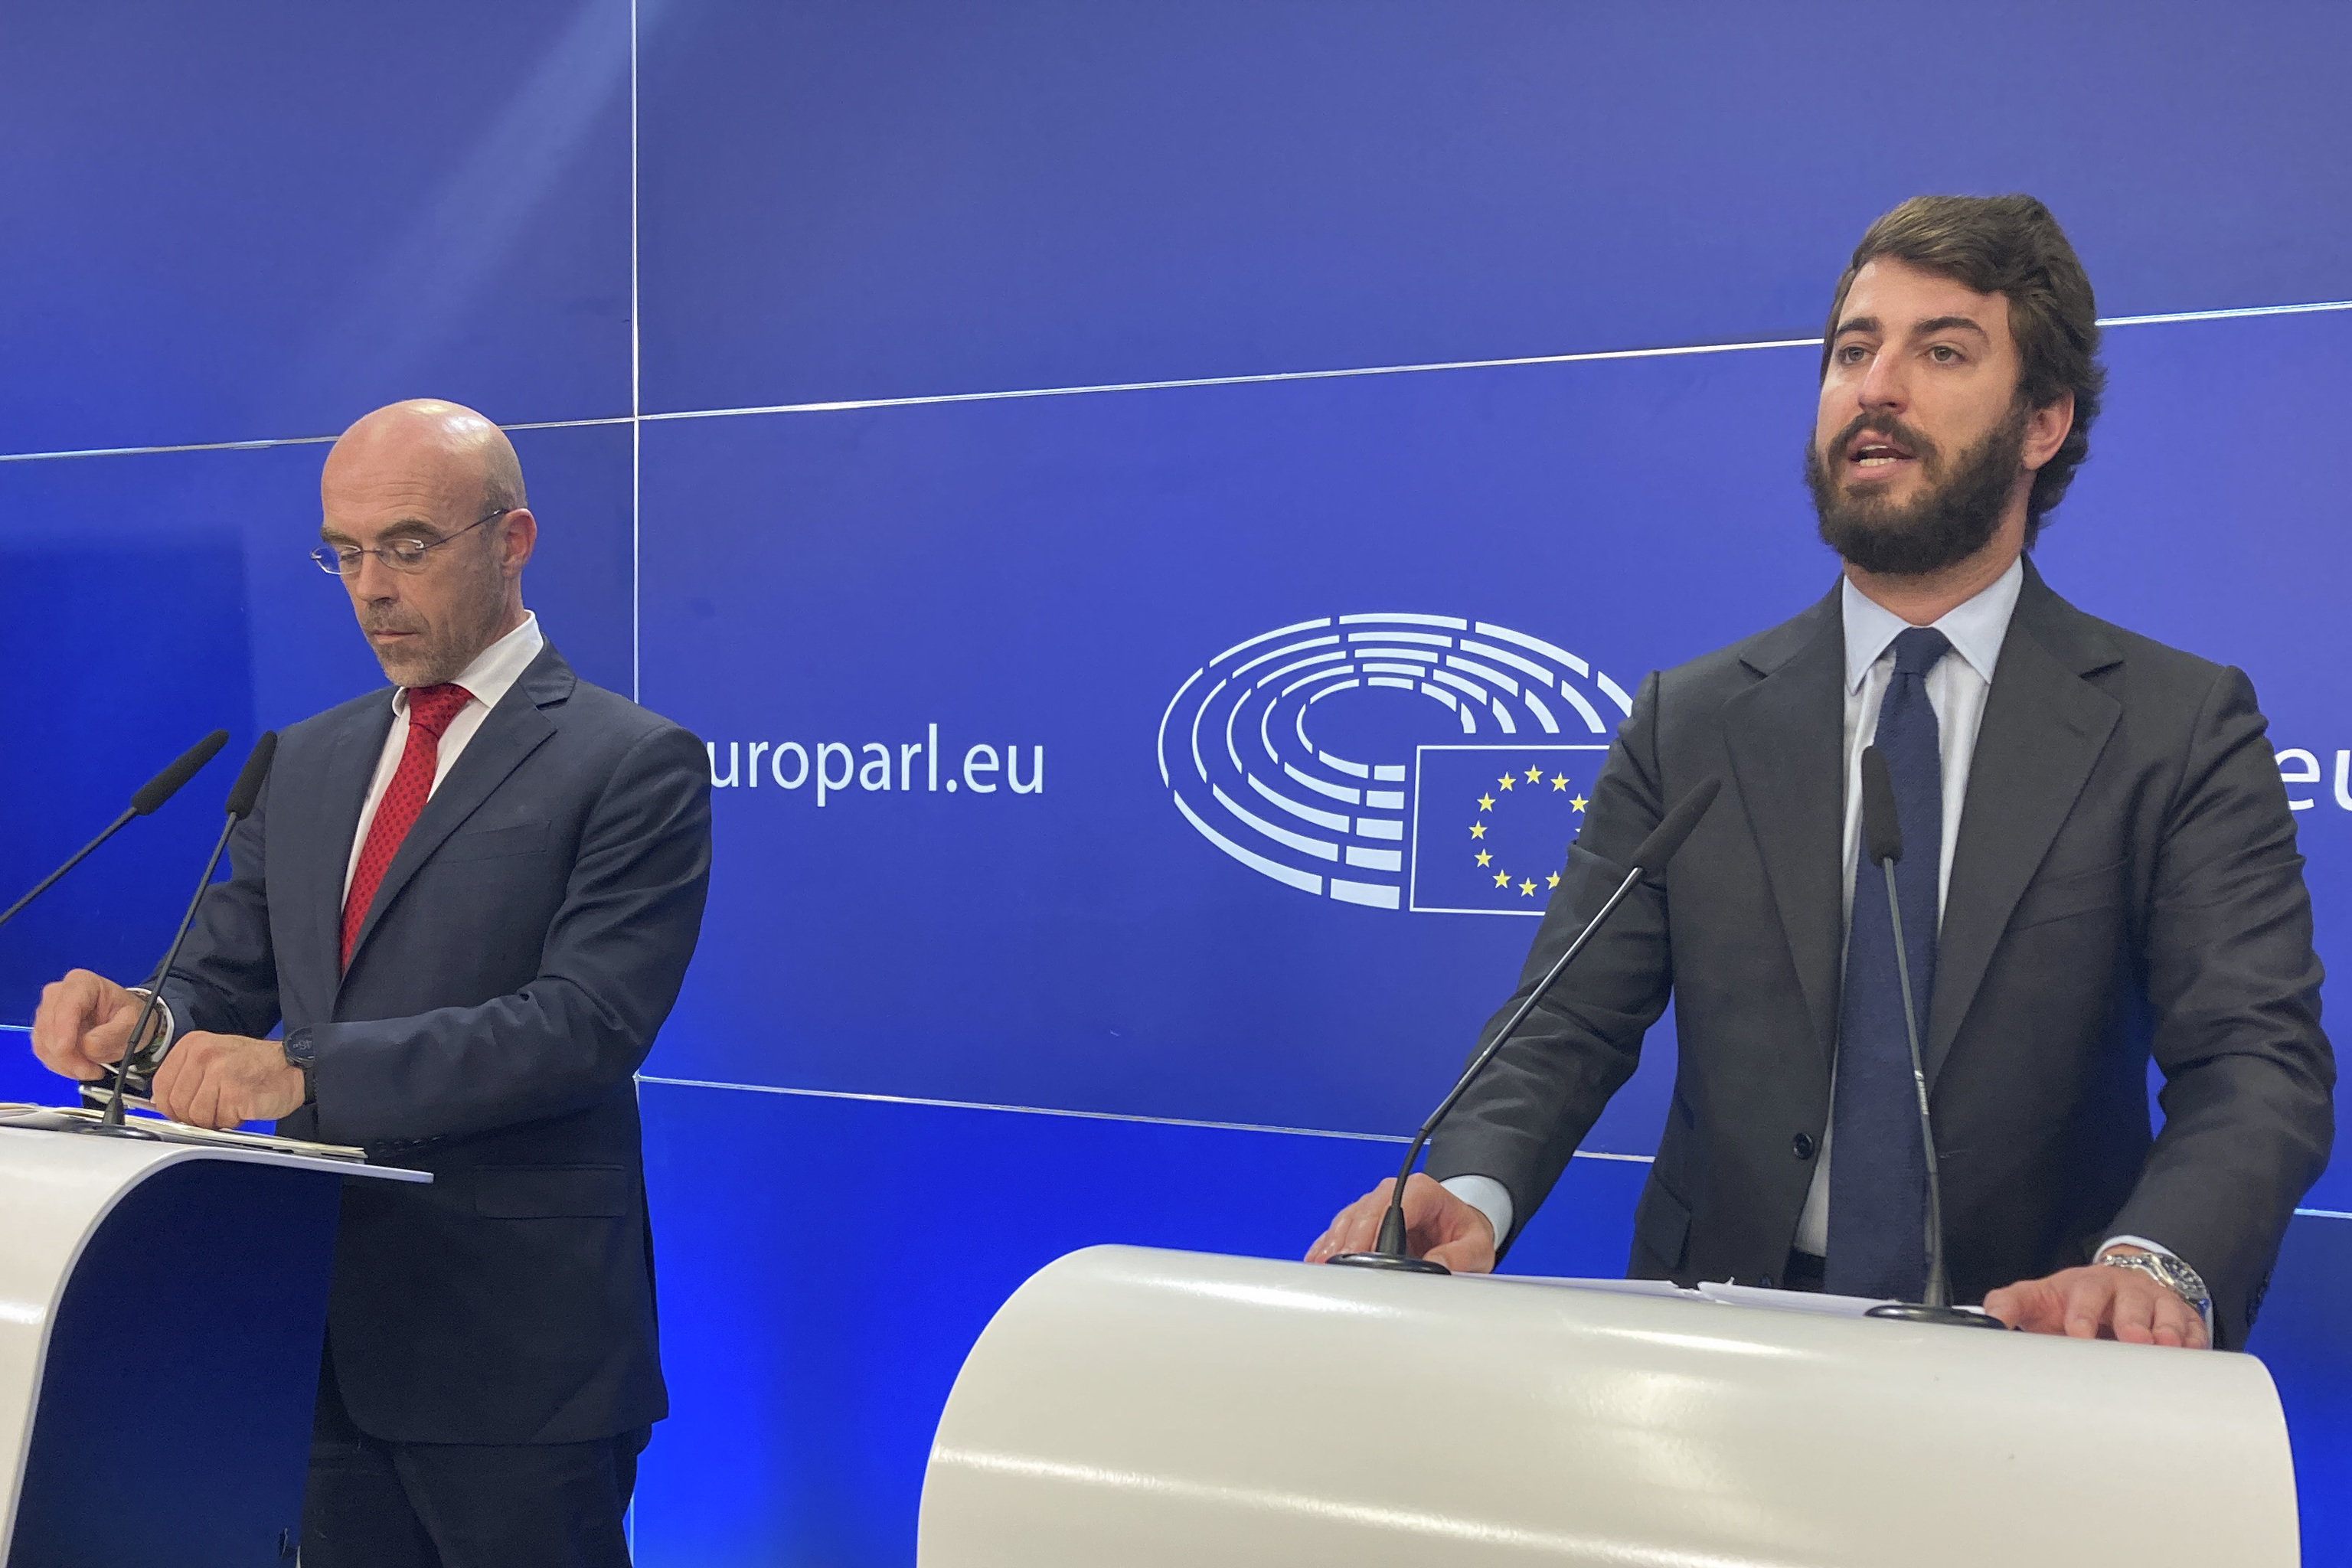 El vicepresidente de la Junta de Castilla y Len, Juan Garca-Gallardo, junto al eurodiputado de Vox Jorge Buxad, durante una rueda de prensa en la sede bruselense del Parlamento Europeo.